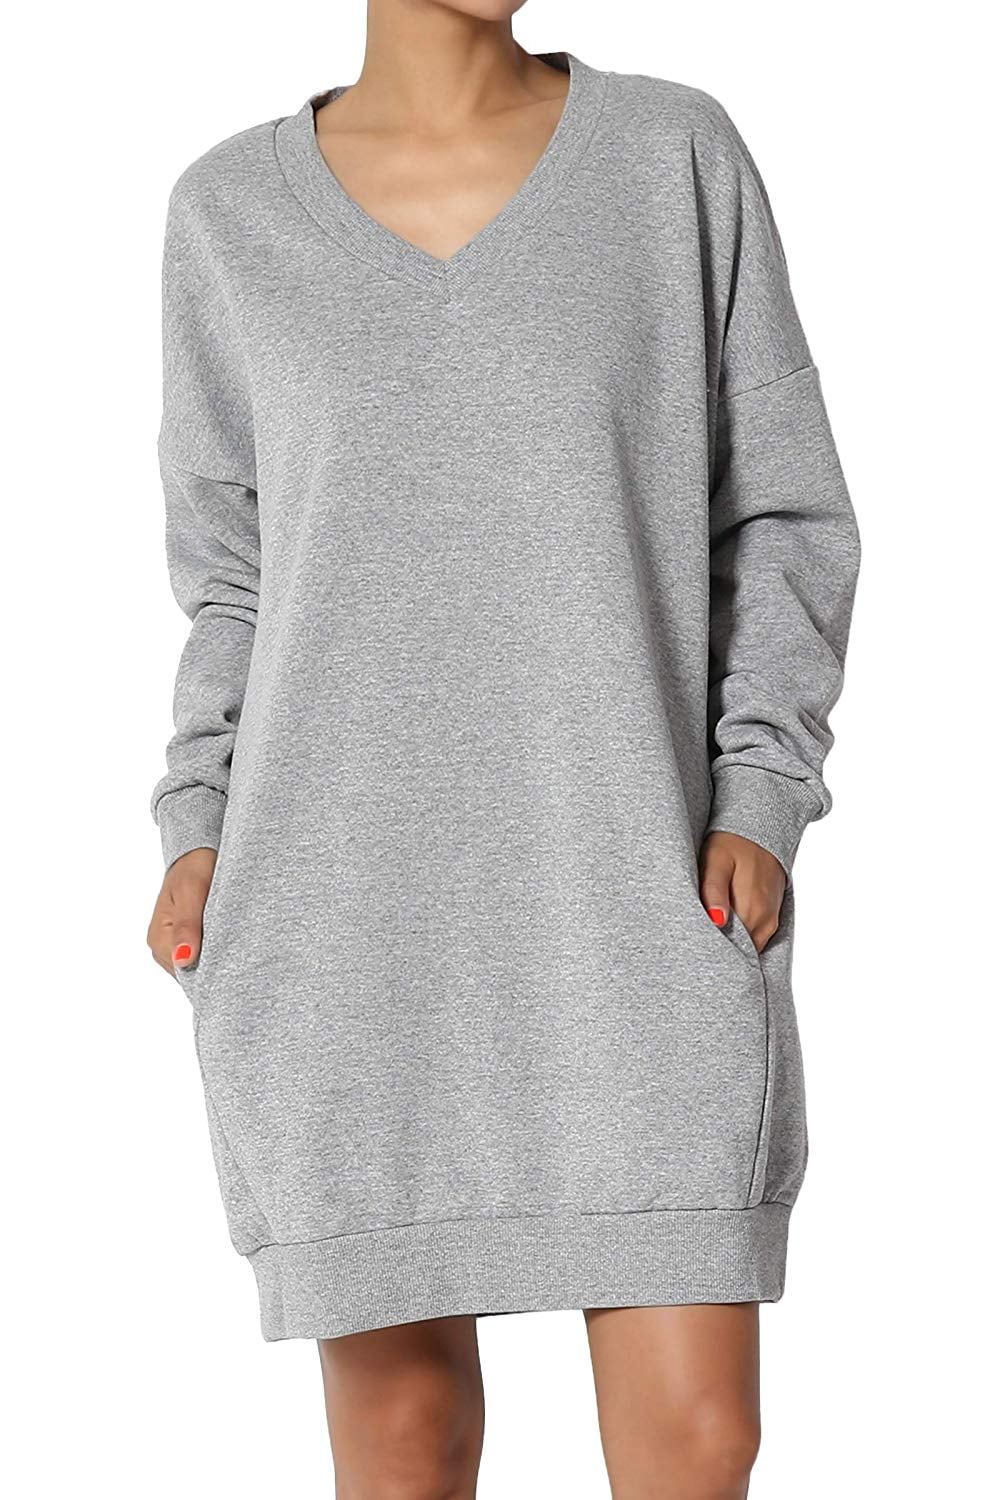 Oversized Sweatshirt Dress / Sweater / Jumper